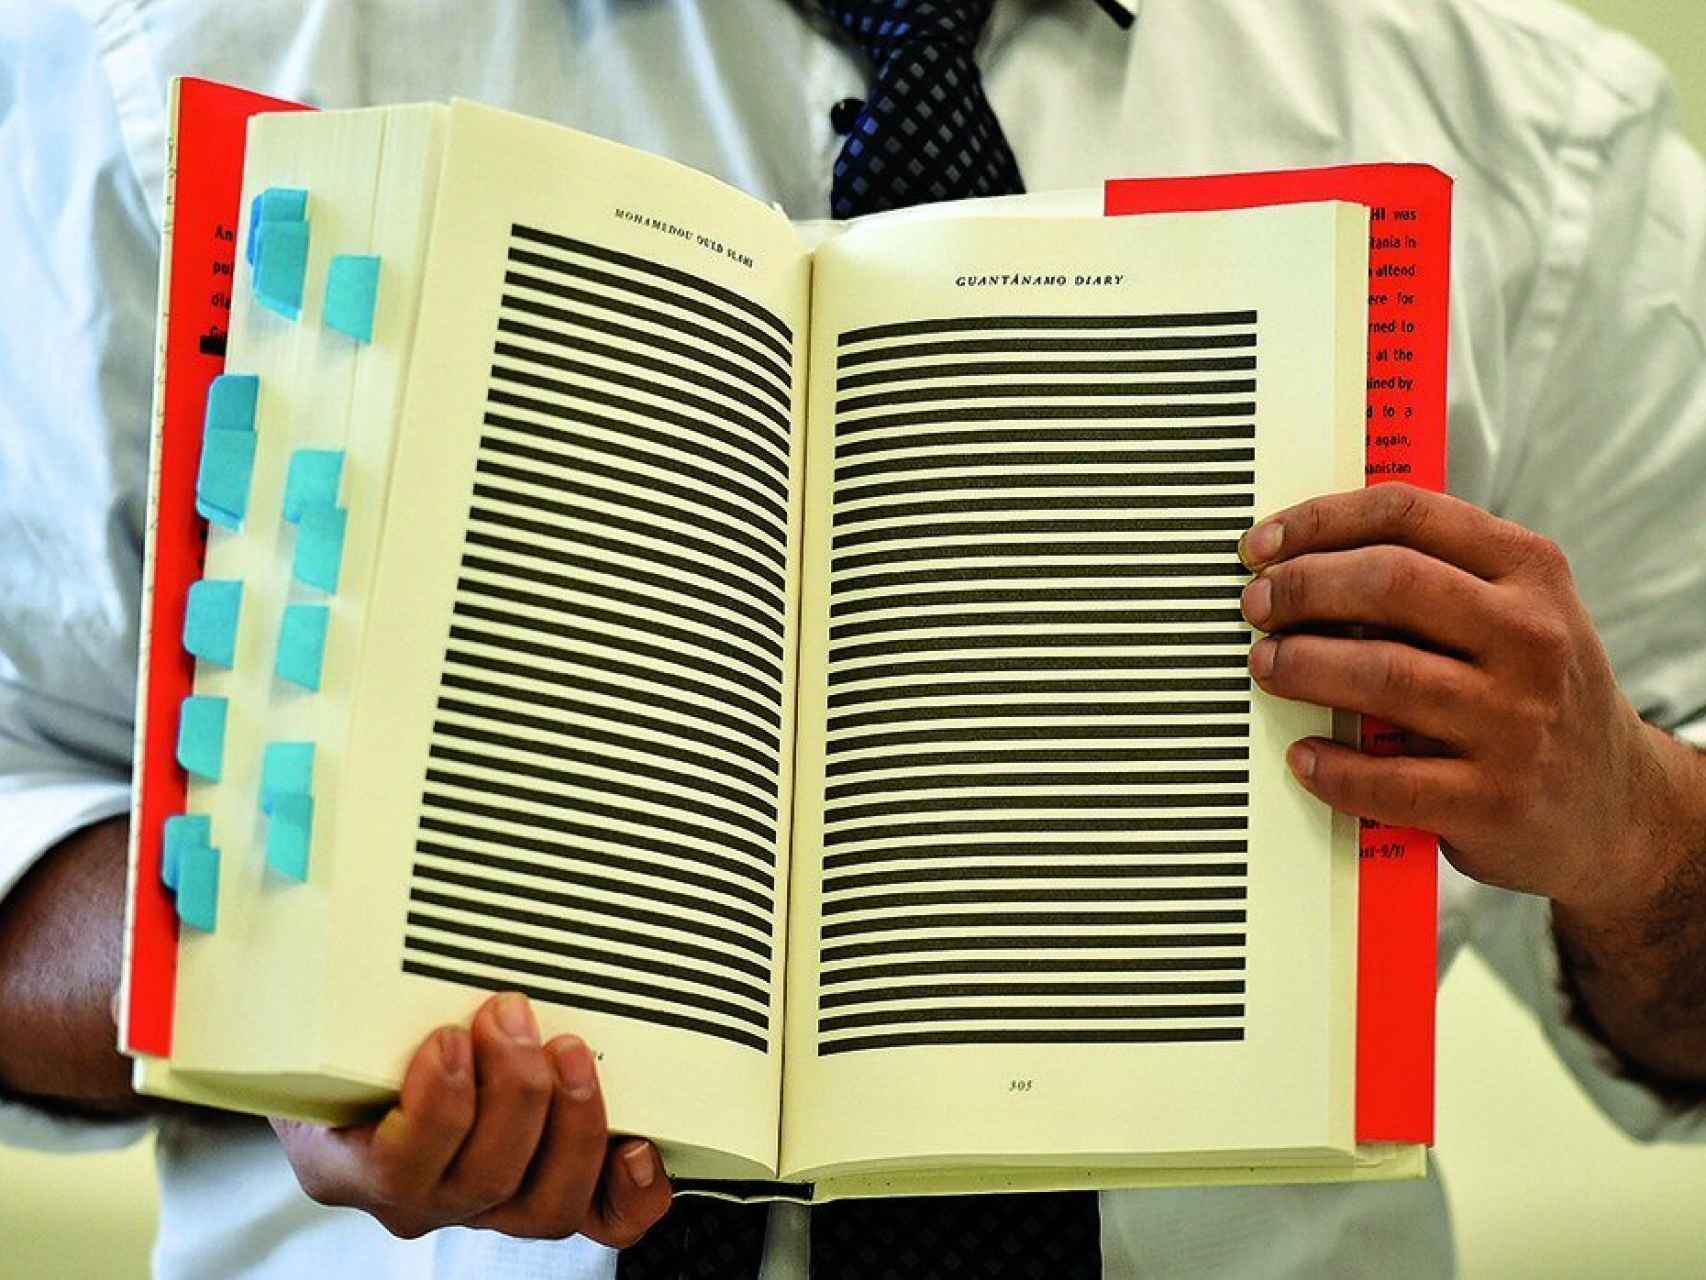 Imagen del libro Diario de Guantánamo con los extractos censurados con bloques negros